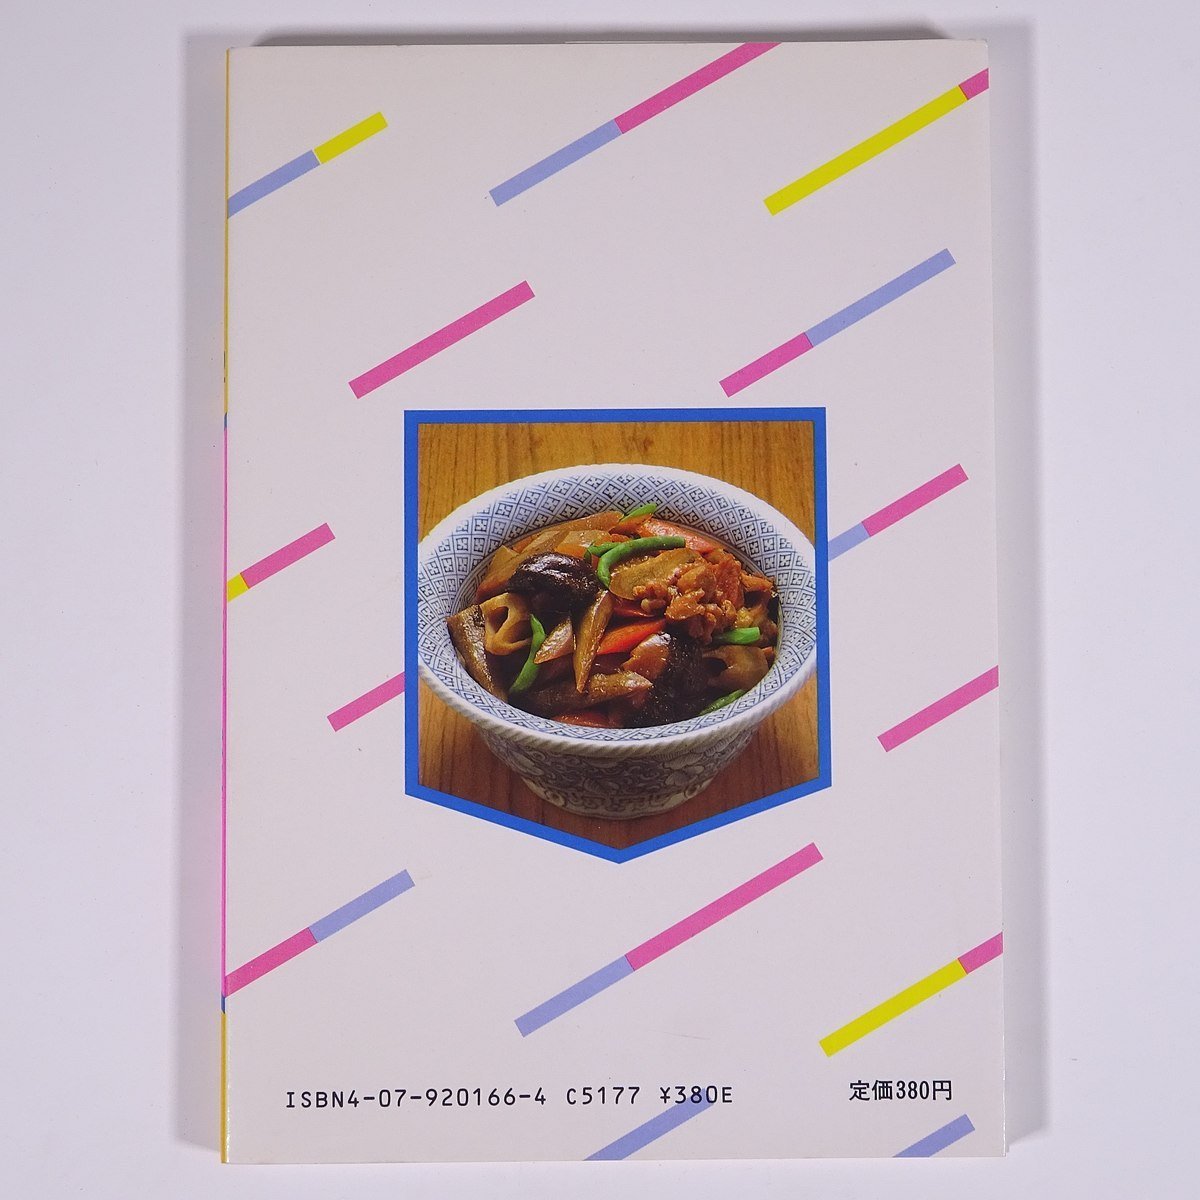  скорость гарнир ...3 минут ~20 минут Мураками ..HAPPY COOKING 102... . фирма 1984 монография кулинария .. рецепт 